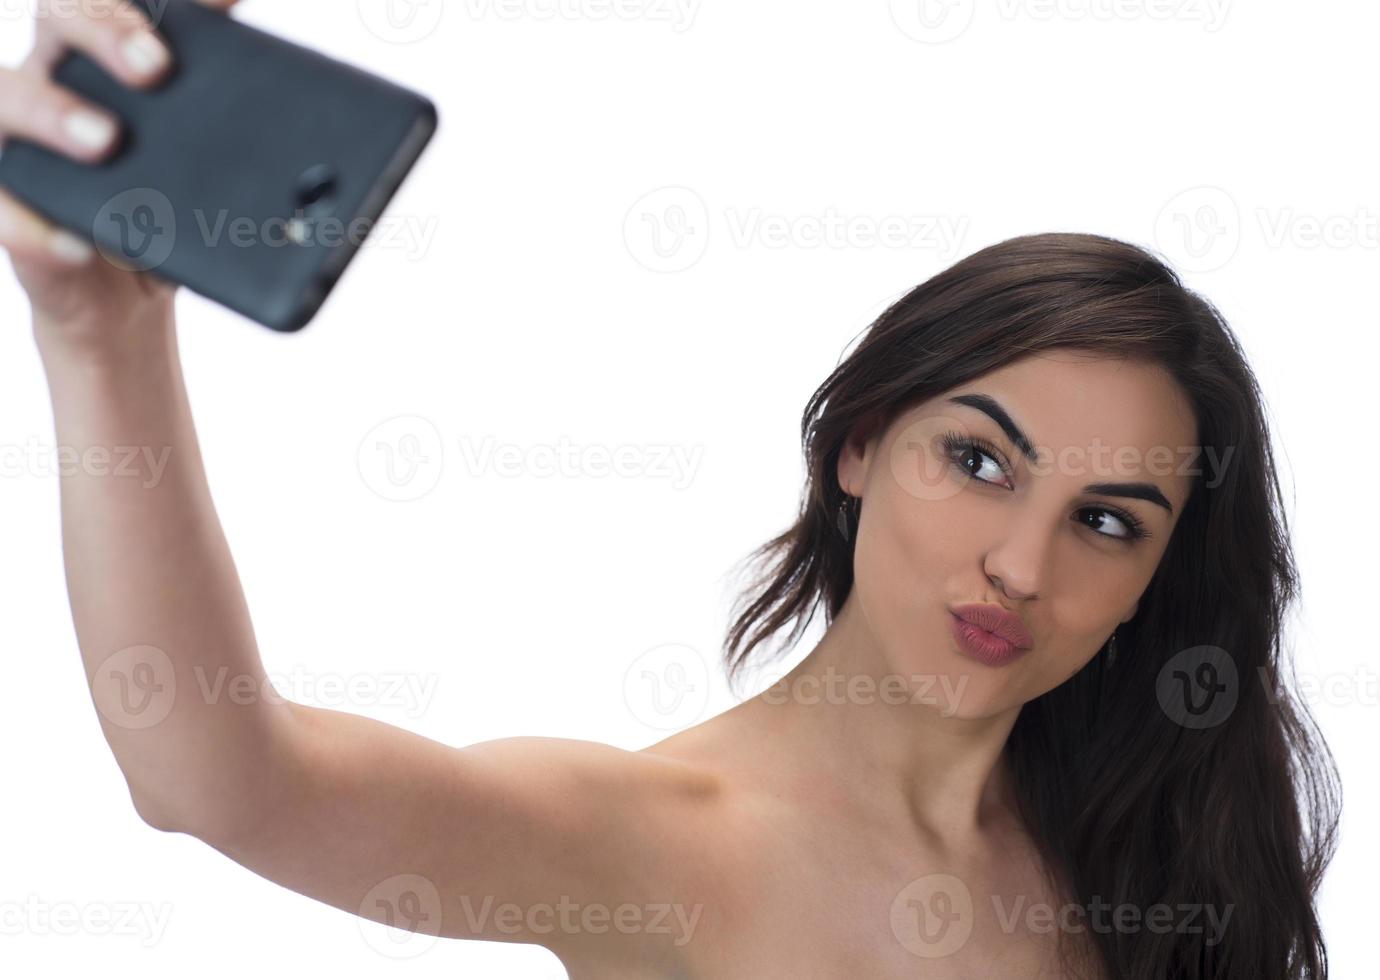 imagem de uma linda mulher morena rindo enquanto tirava uma foto de selfie no celular isolado sobre fundo branco